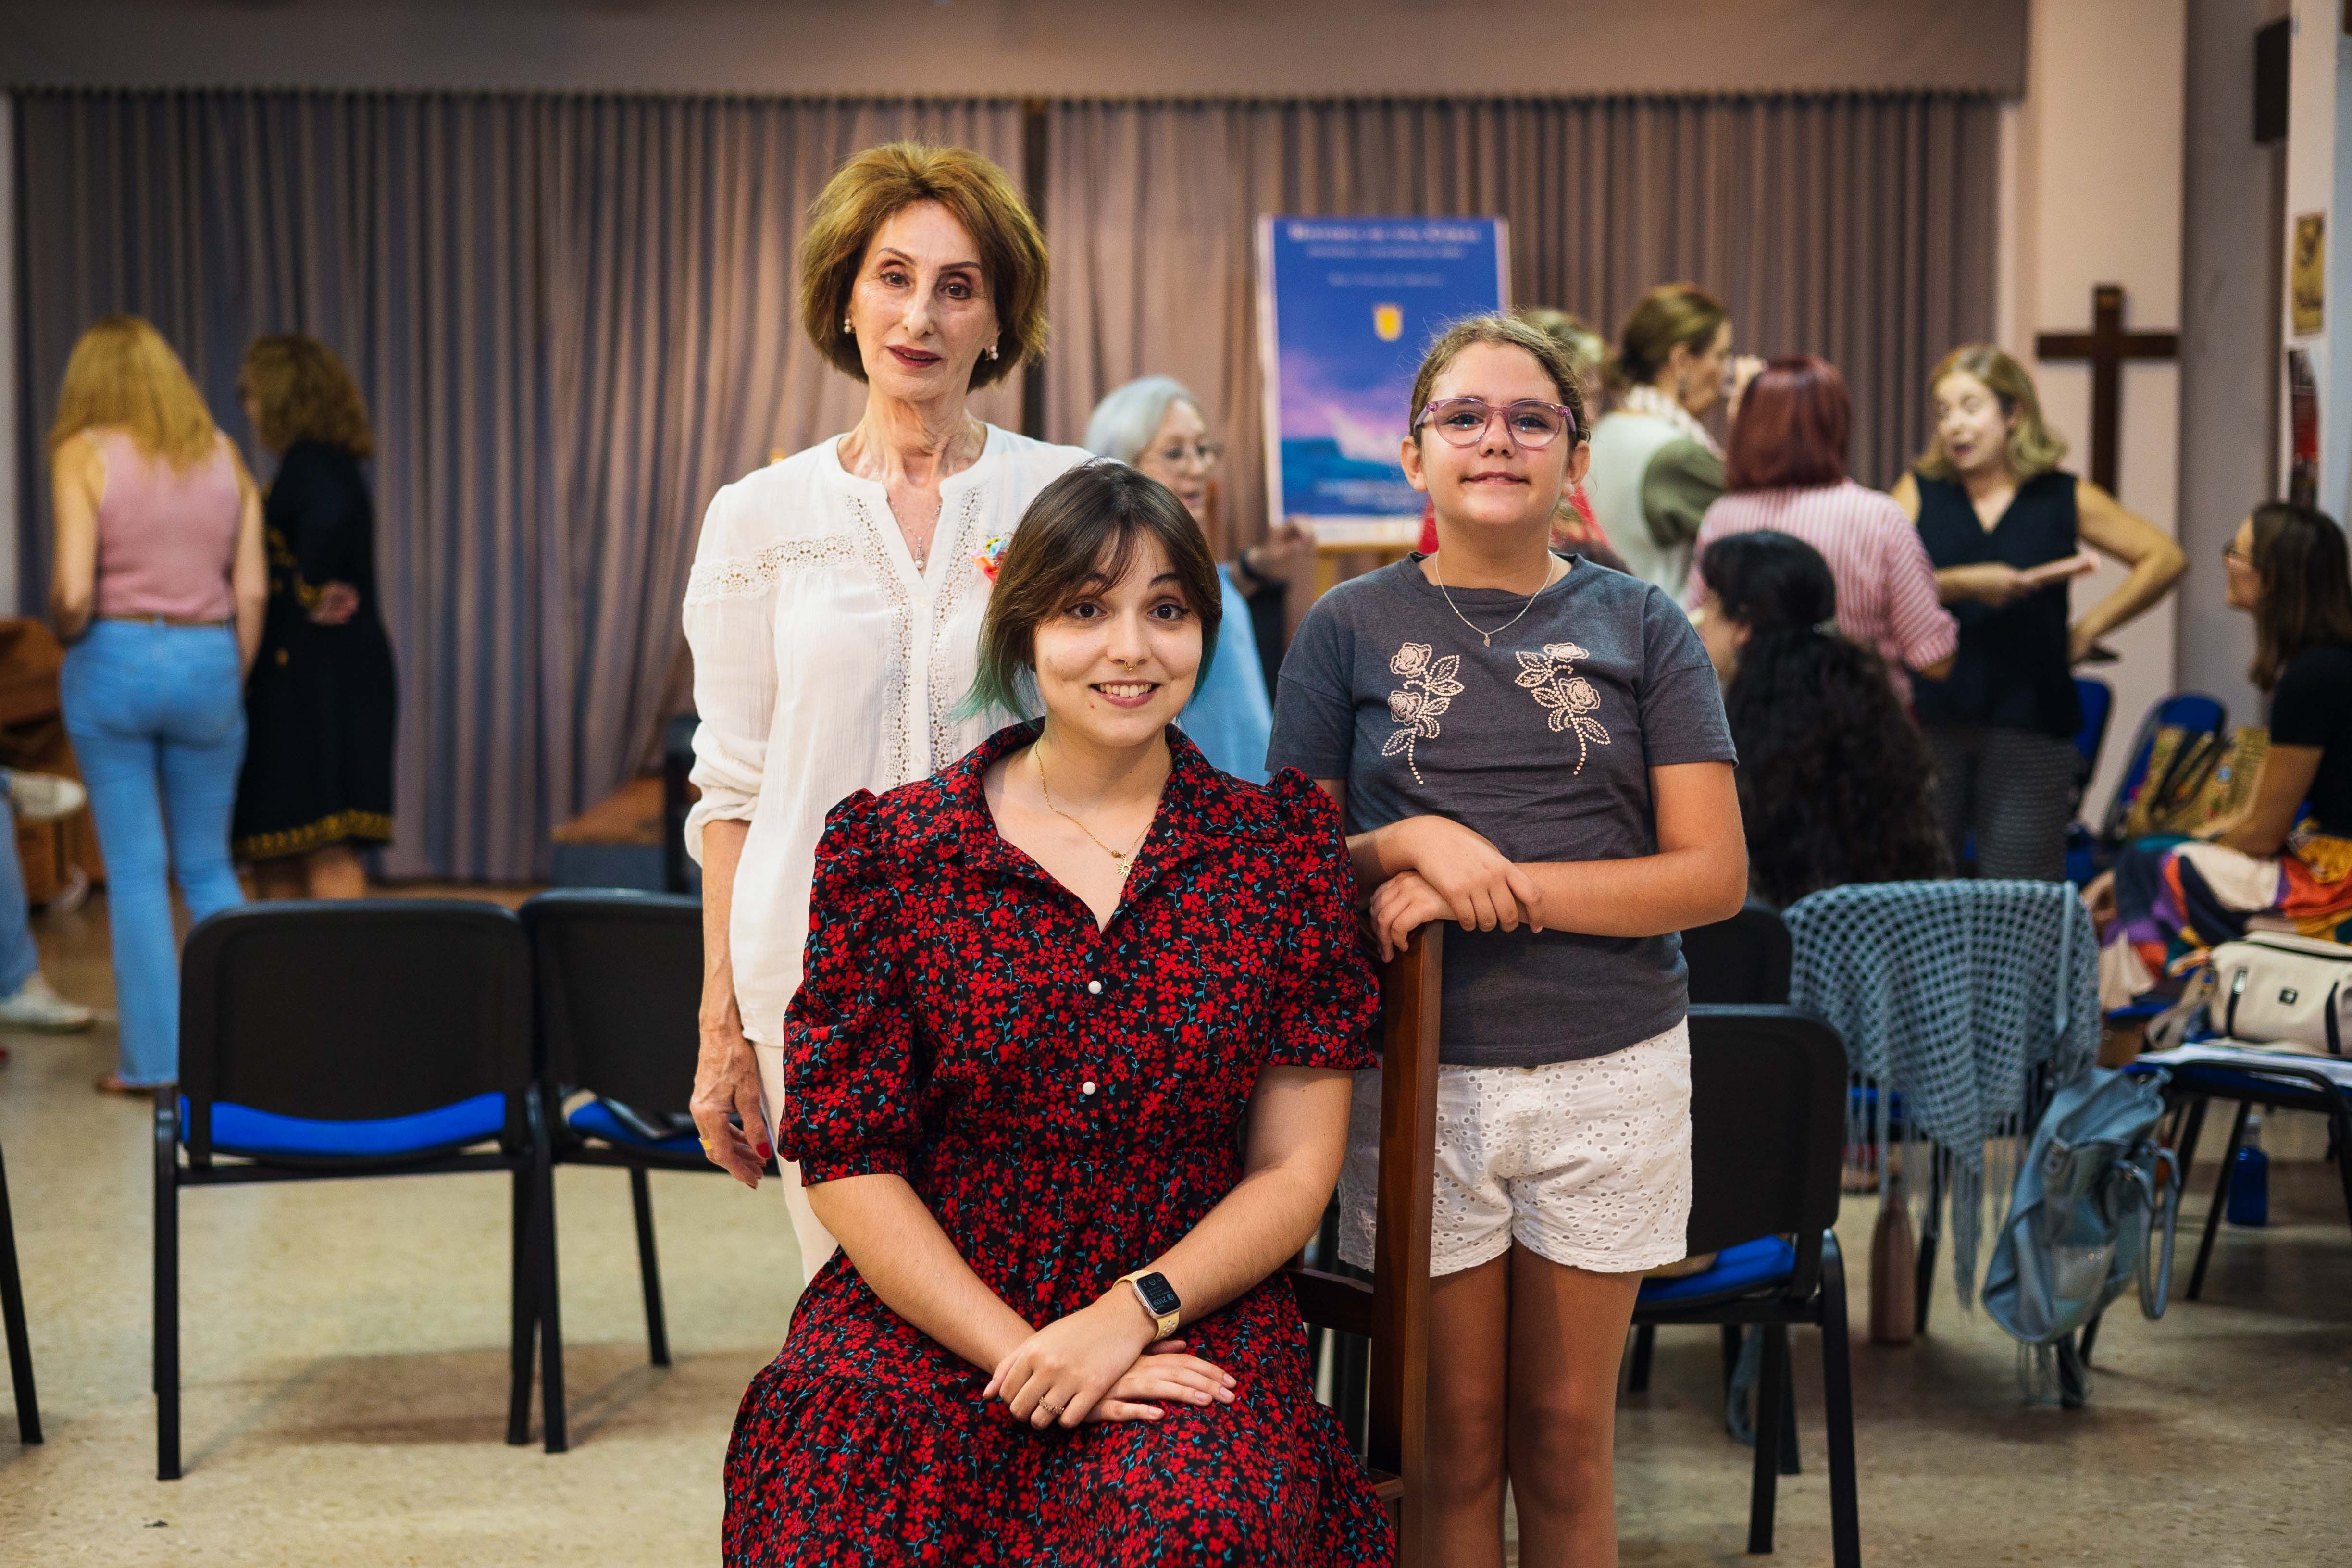 La dkexctor,a sentada, munto a la componente más veterana y presidenta Teresa Diez, y la más joven, Claudia Cebadera.     MANU GARCÍA